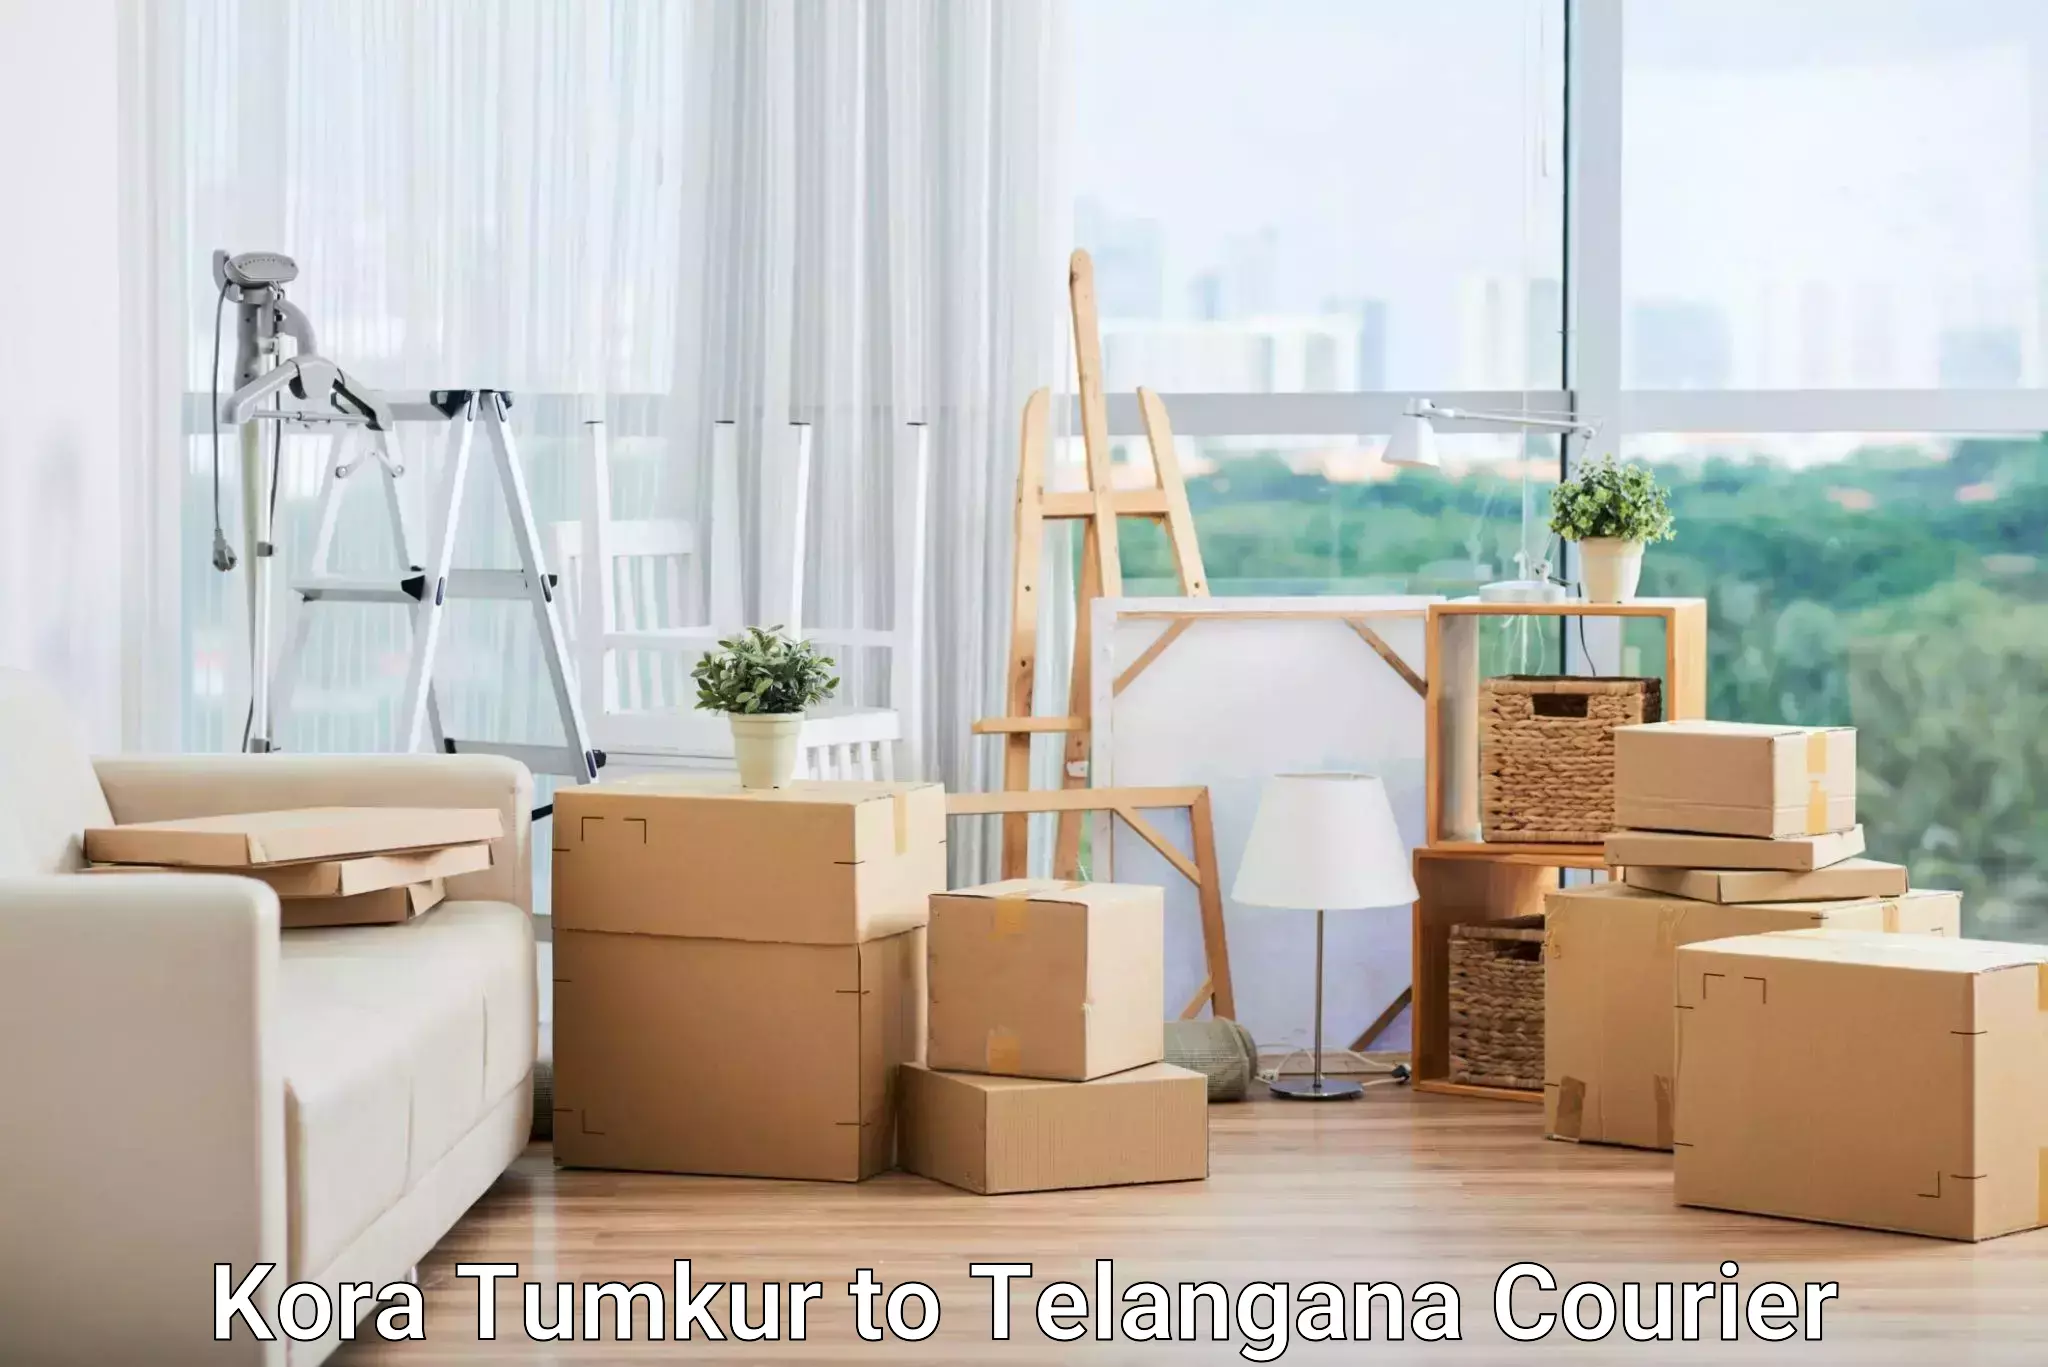 Advanced parcel tracking Kora Tumkur to Tallada